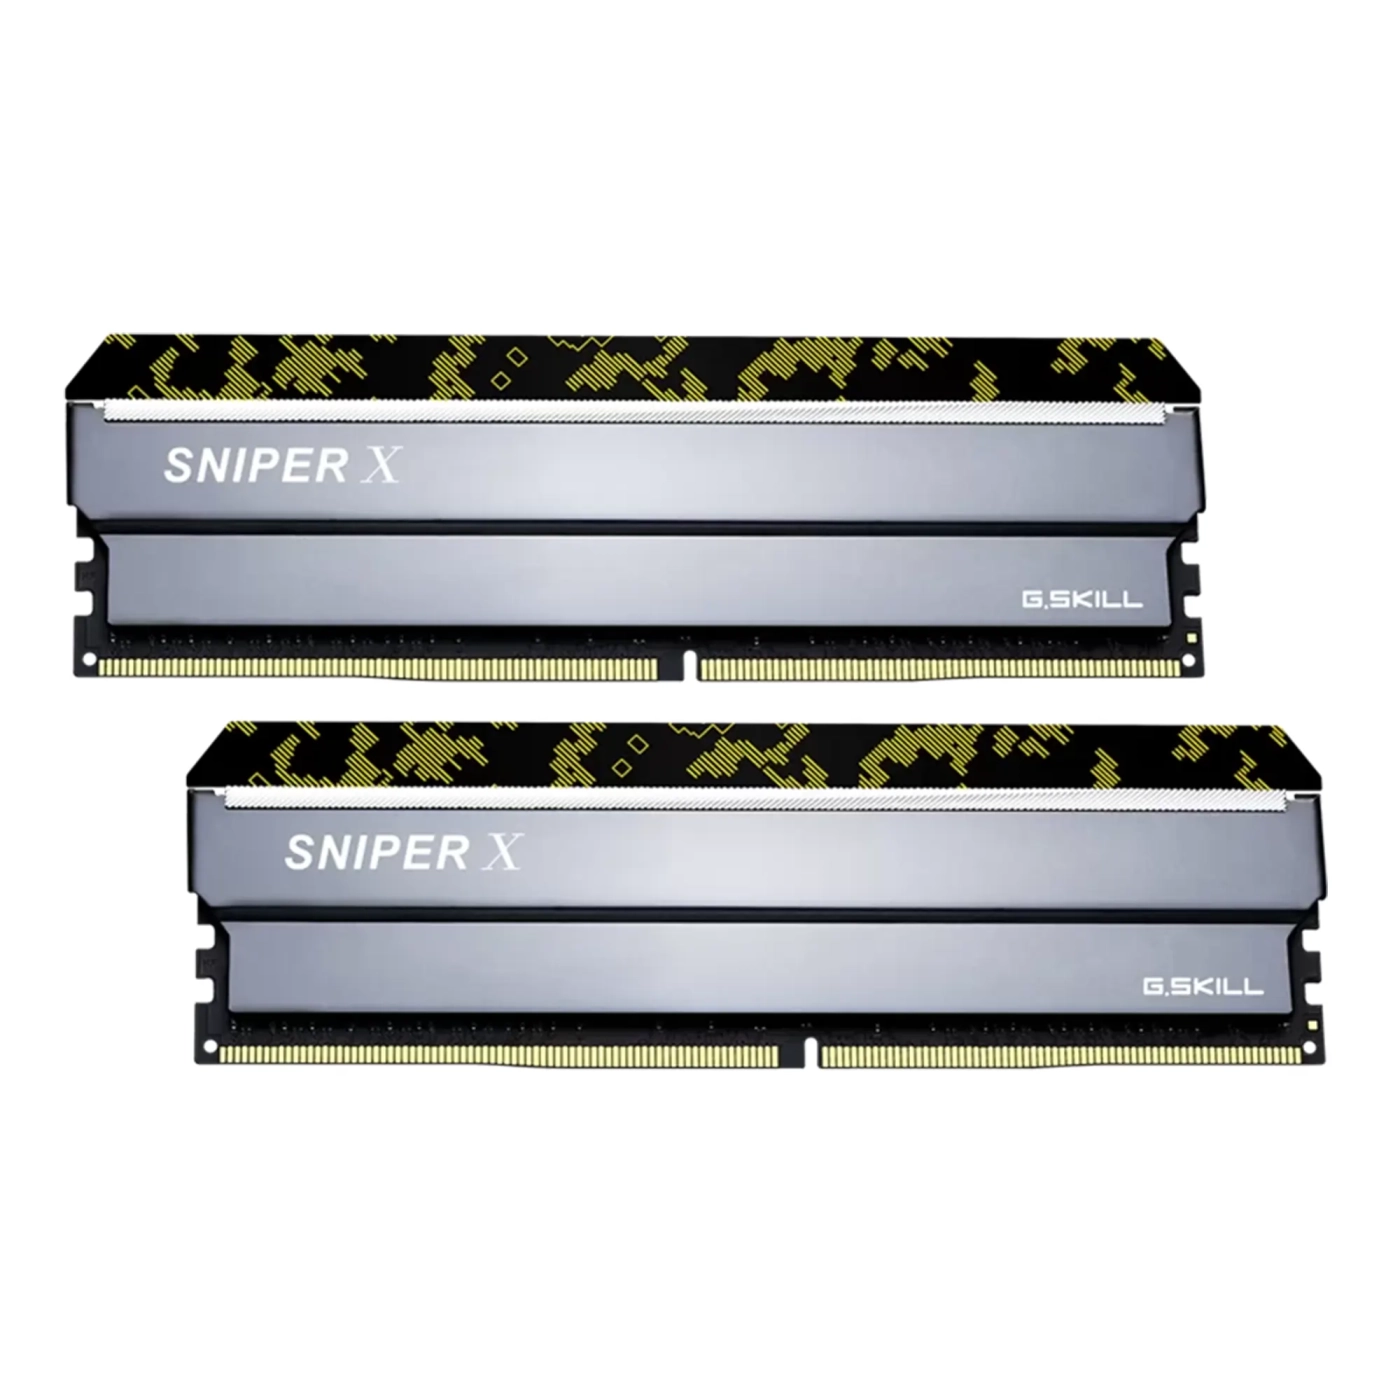 Купить Модуль памяти G.Skill Sniper X Digital Camo DDR4-3200 32GB (2x16GB) CL16-18-18-38 1.35V - фото 2